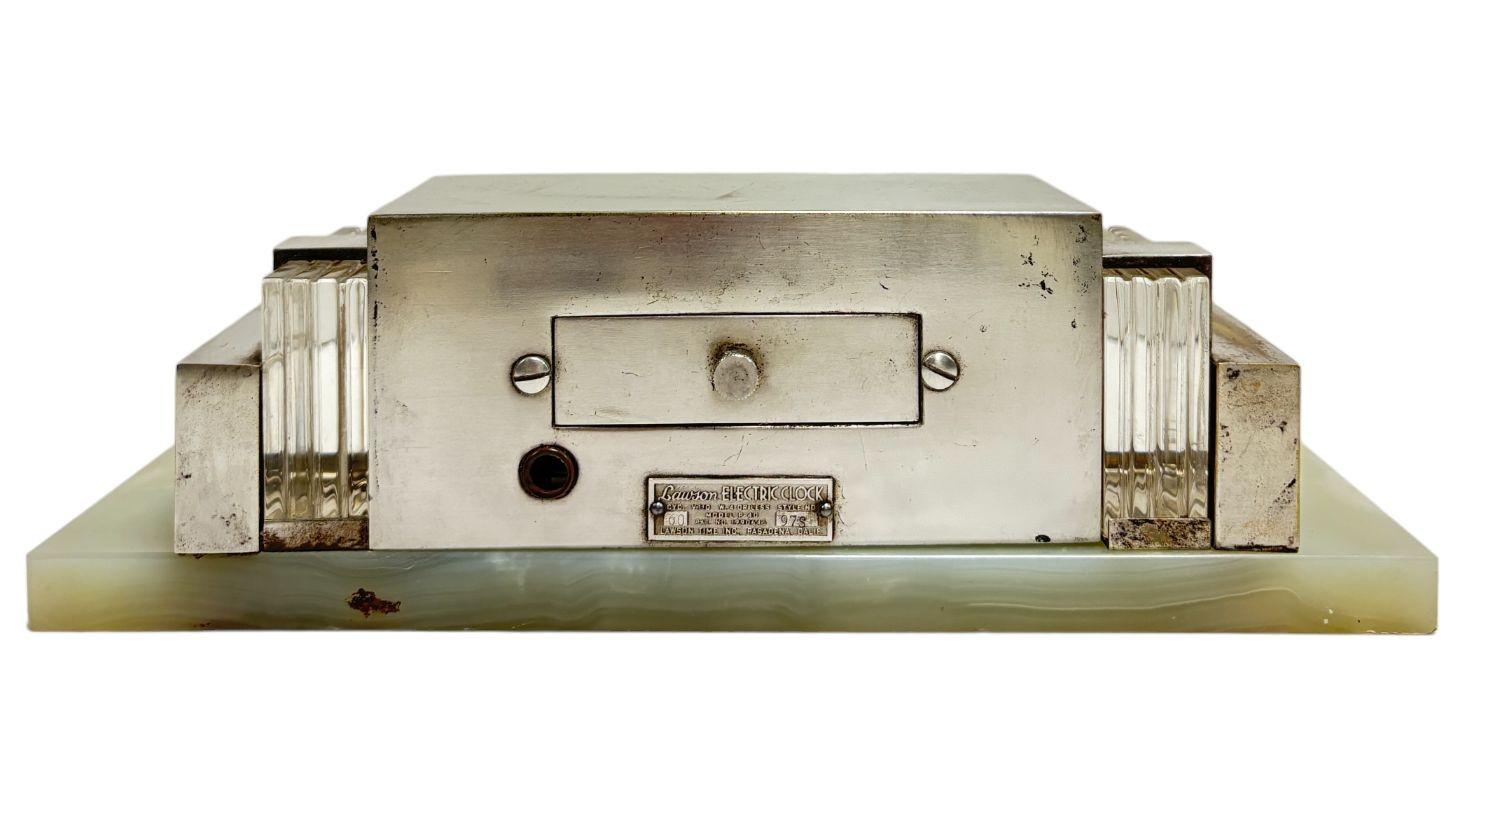 Ein frühes circa 1930er Zyklometer Modell 975 elektrische Digitaluhr in einem wunderschönen silbernen architektonischen Gehäuse mit abgestuften verchromten Art-Deco-Akzenten und einem Marmorsockel untergebracht.

Die Lawson Tischuhr ist eine